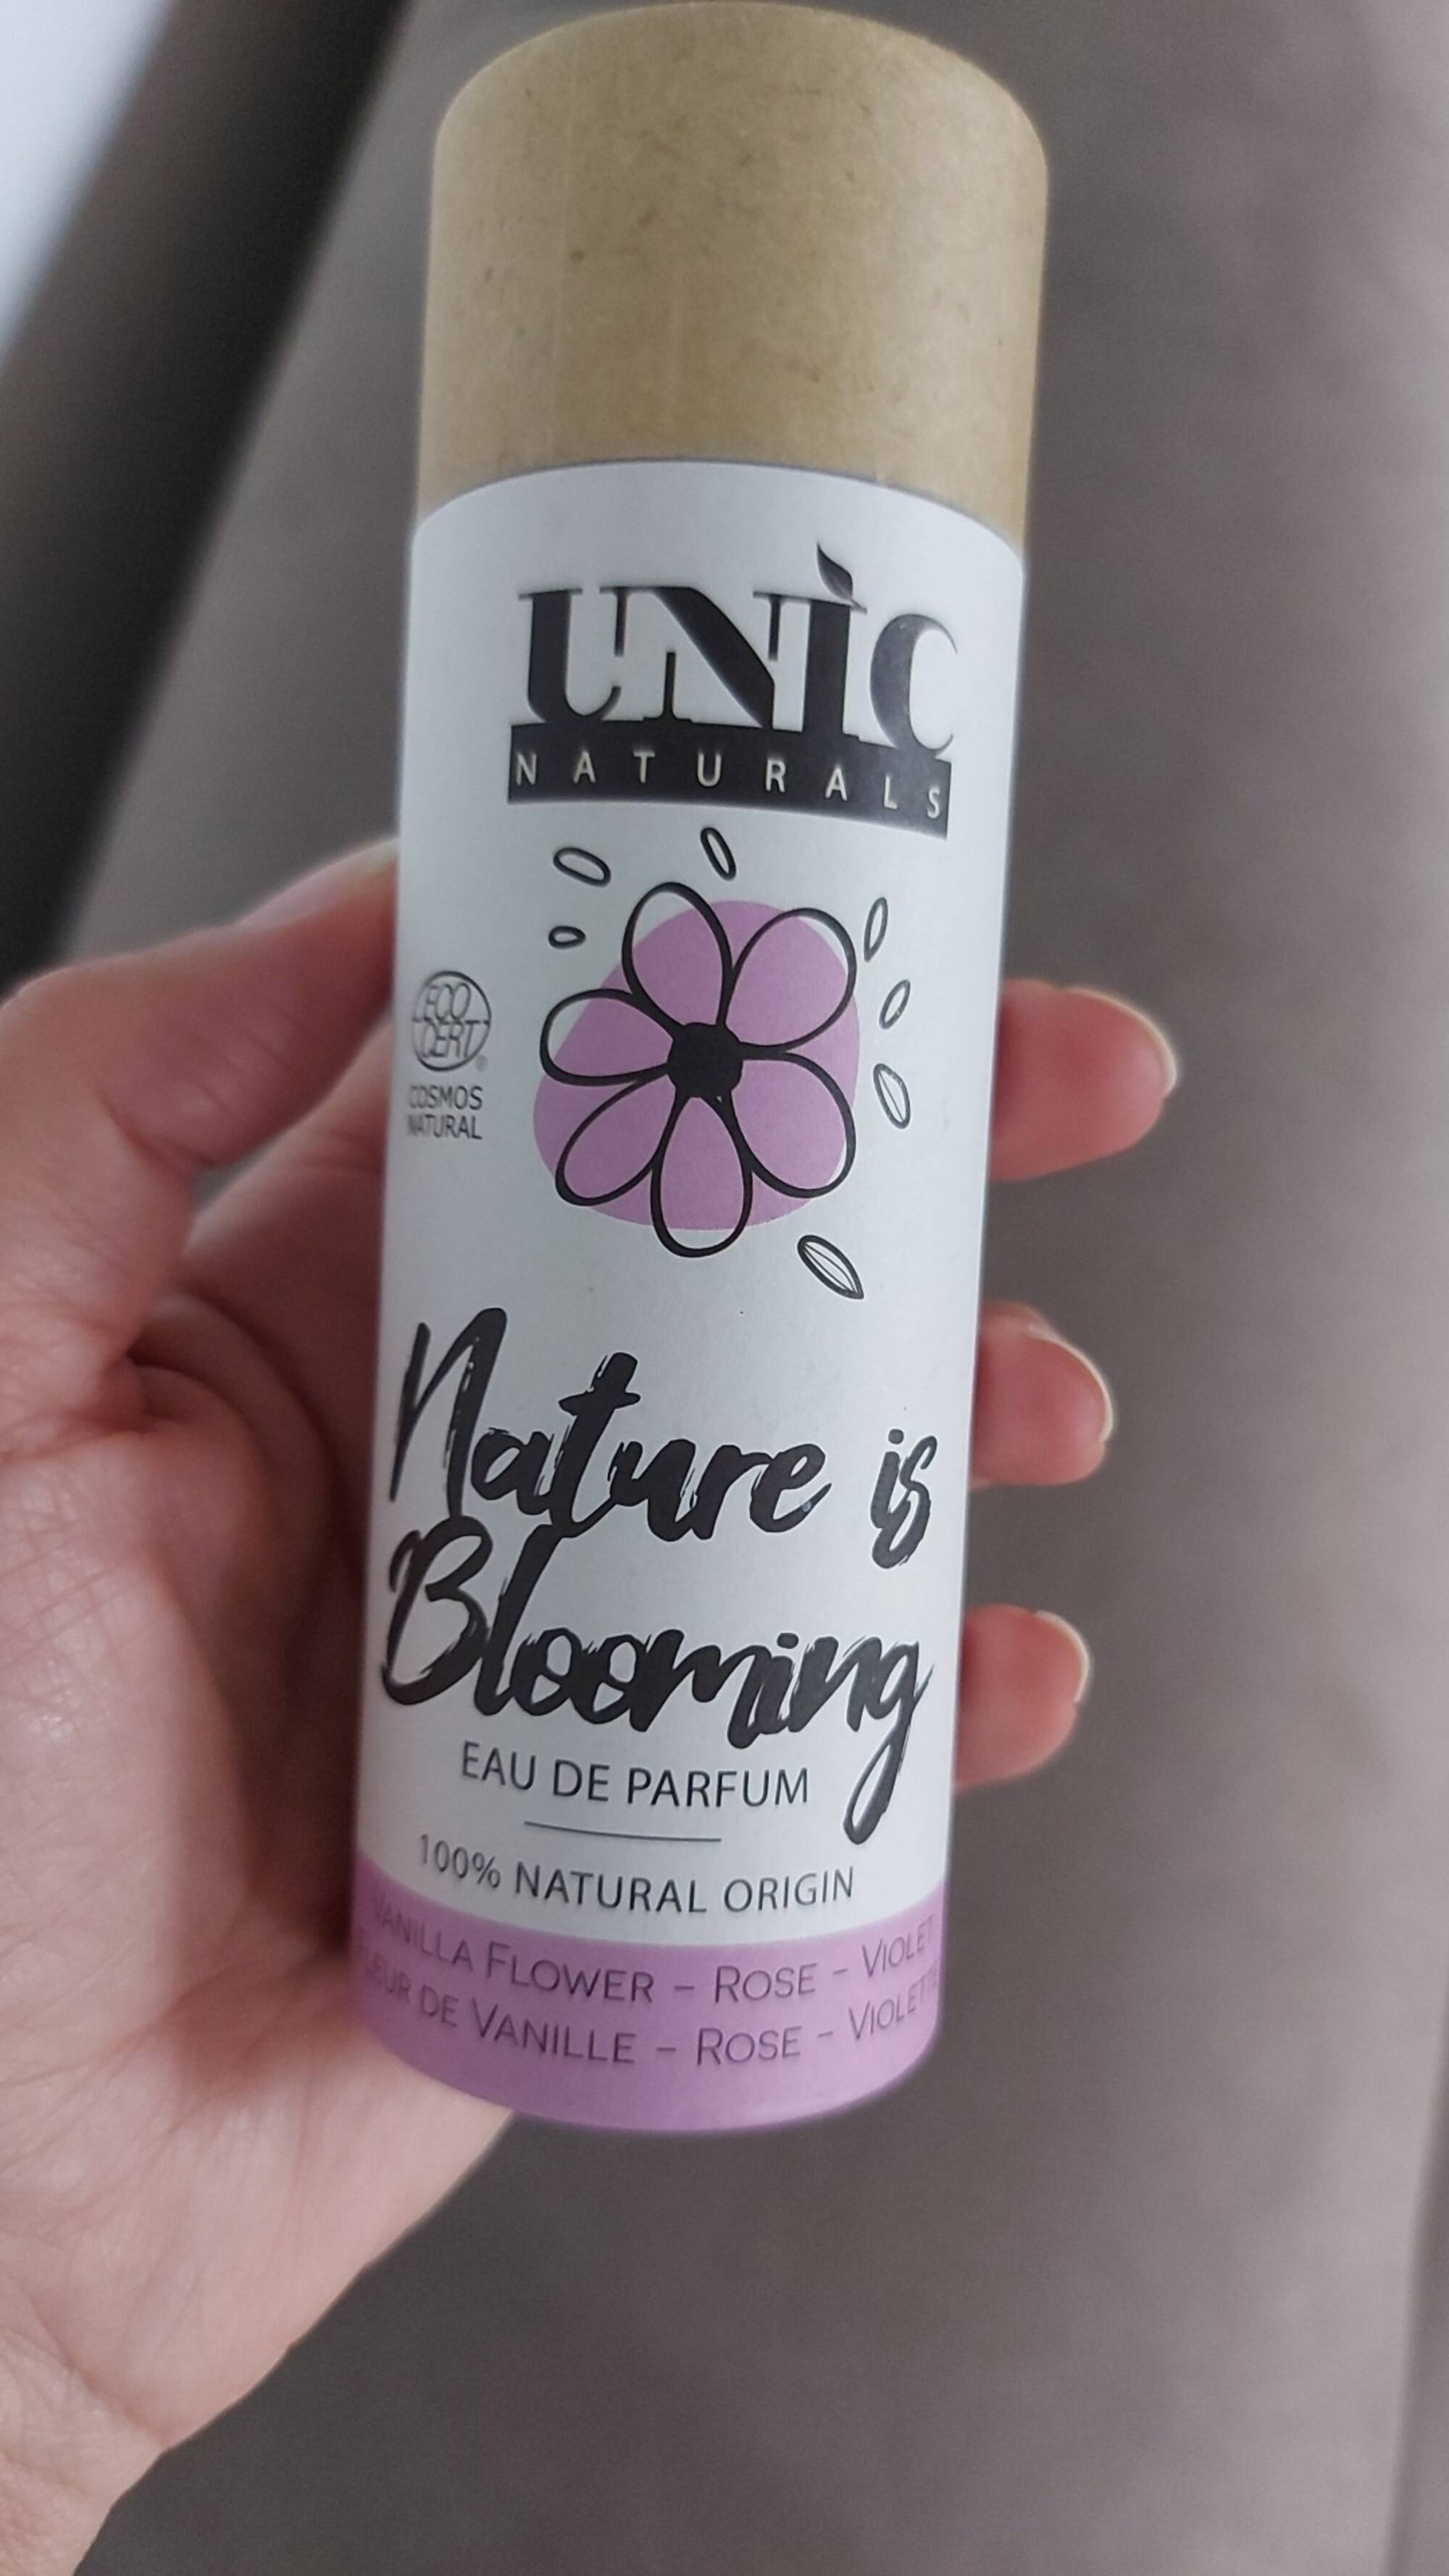 UNIC NATURALS - Nature is blooming - Eau de parfum